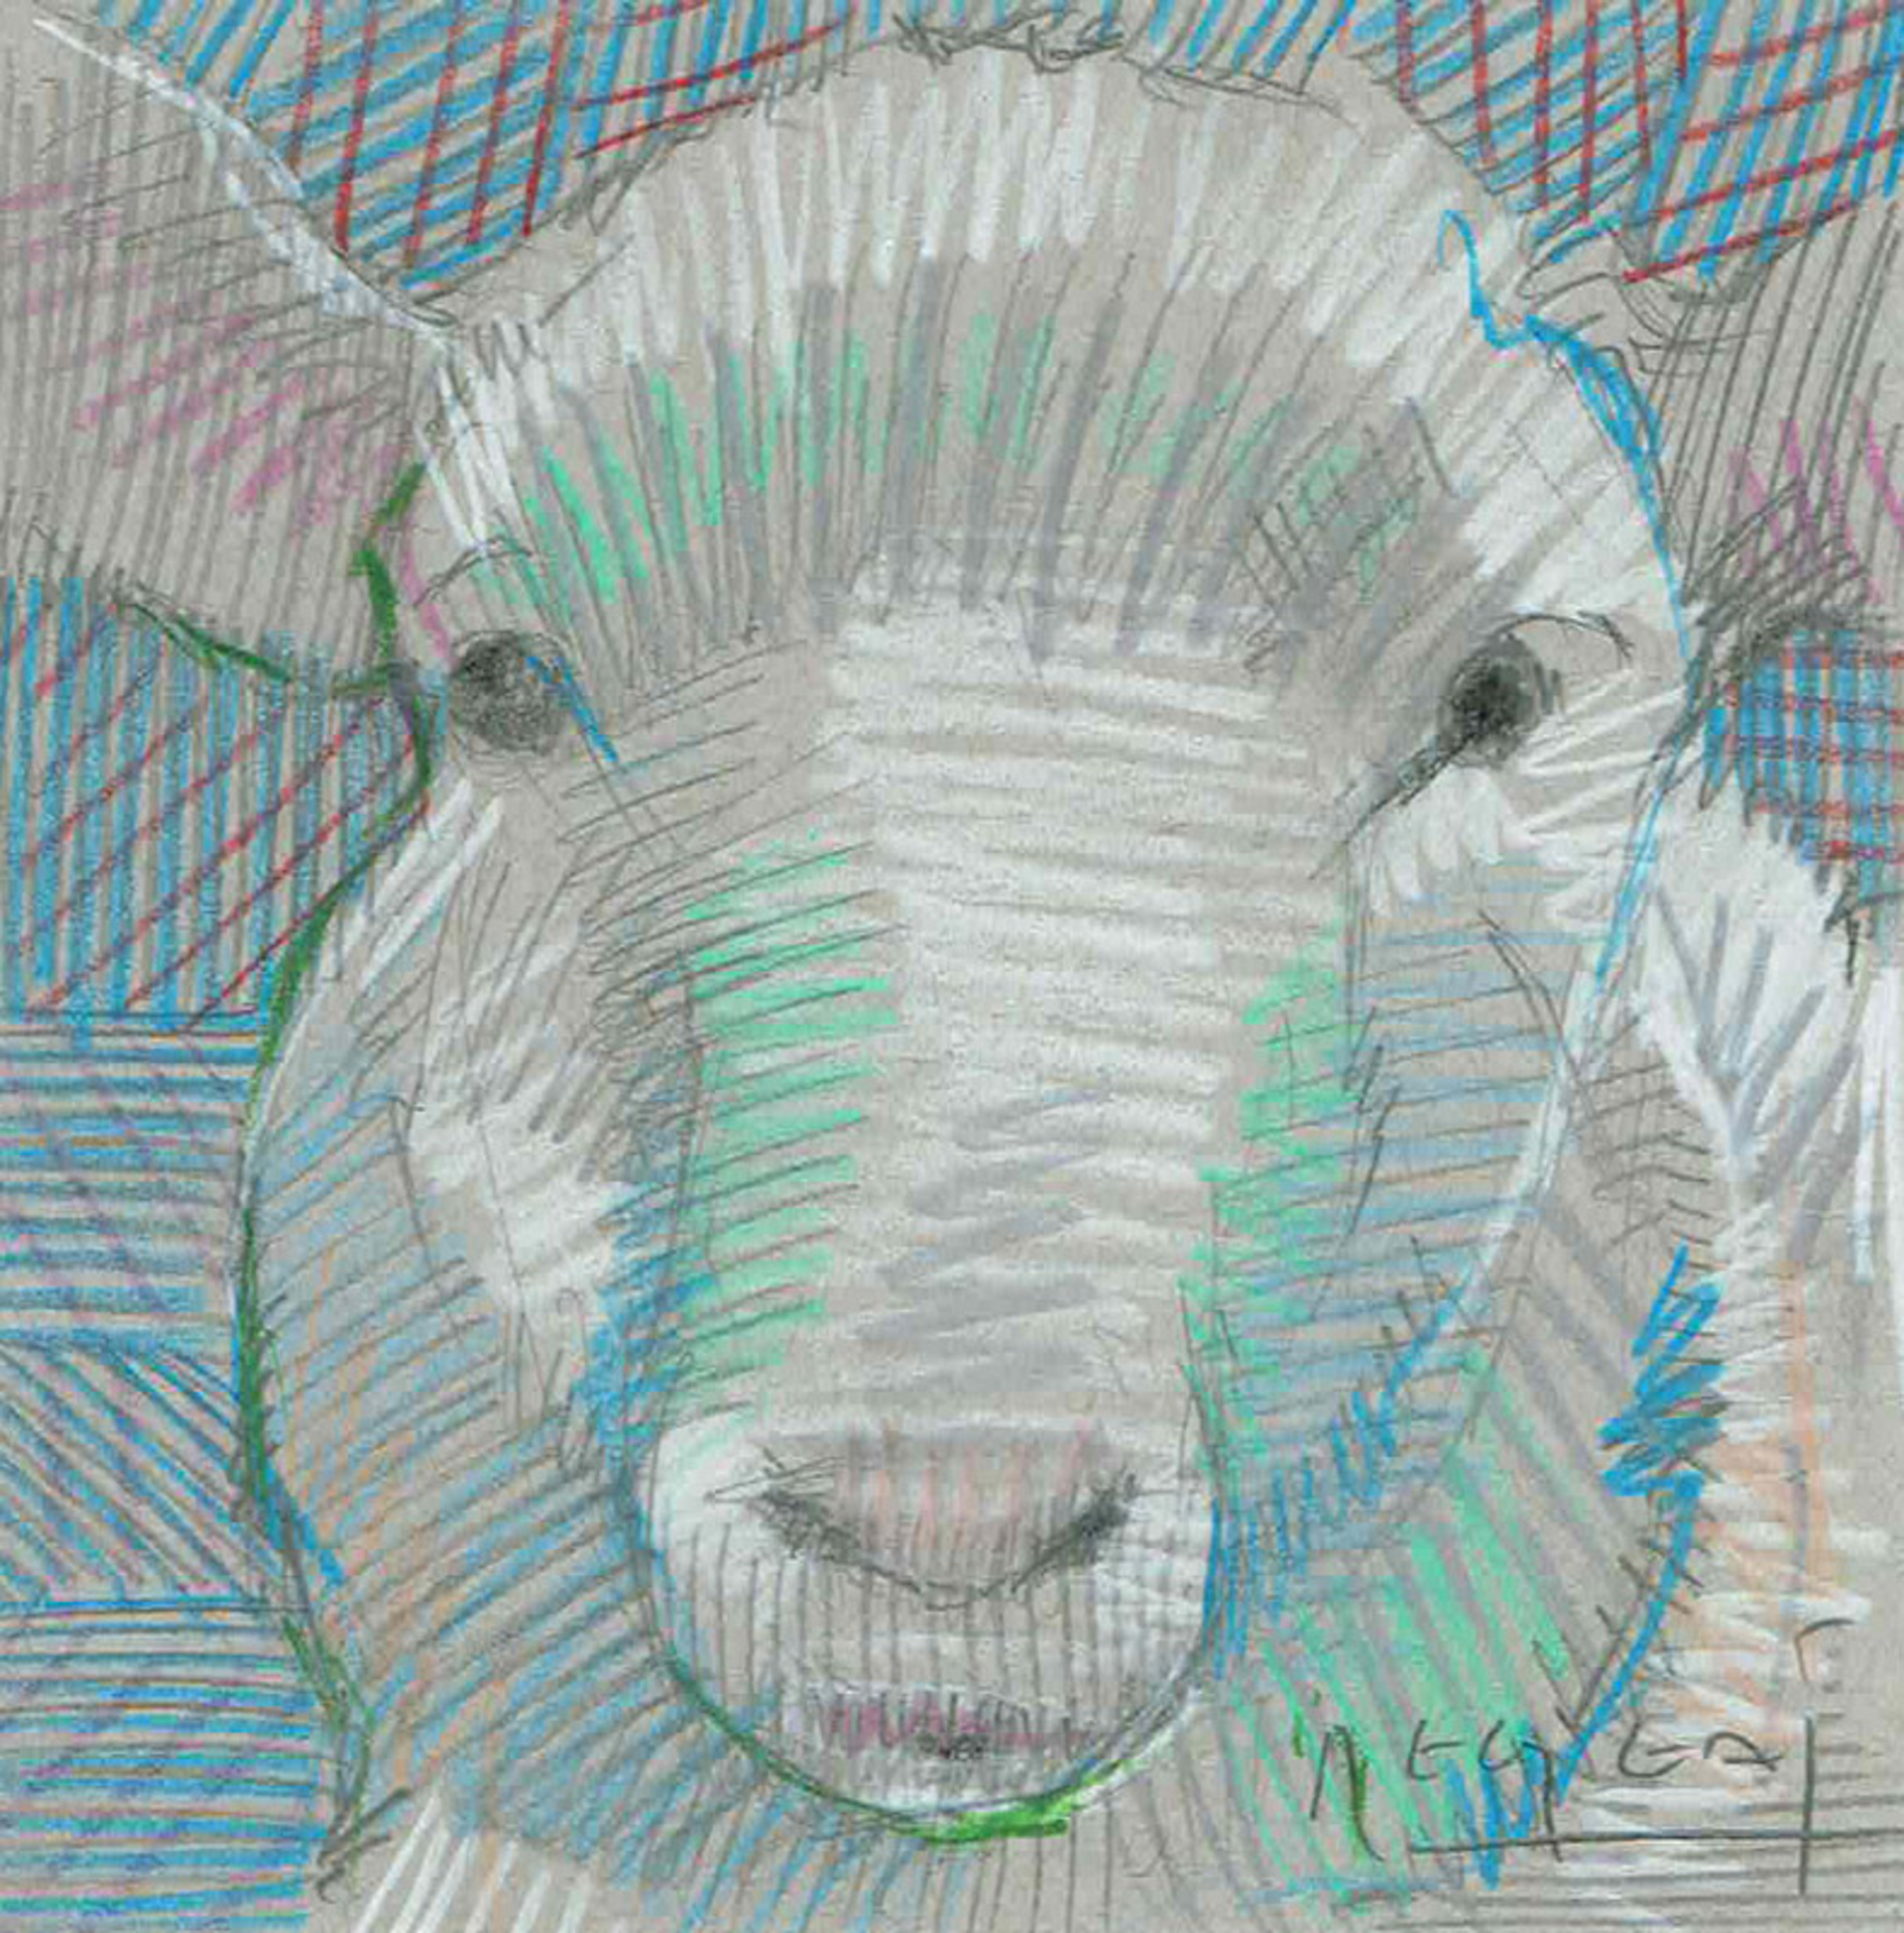 Mini Farm: Sheep No. 4 by Tim Jaeger